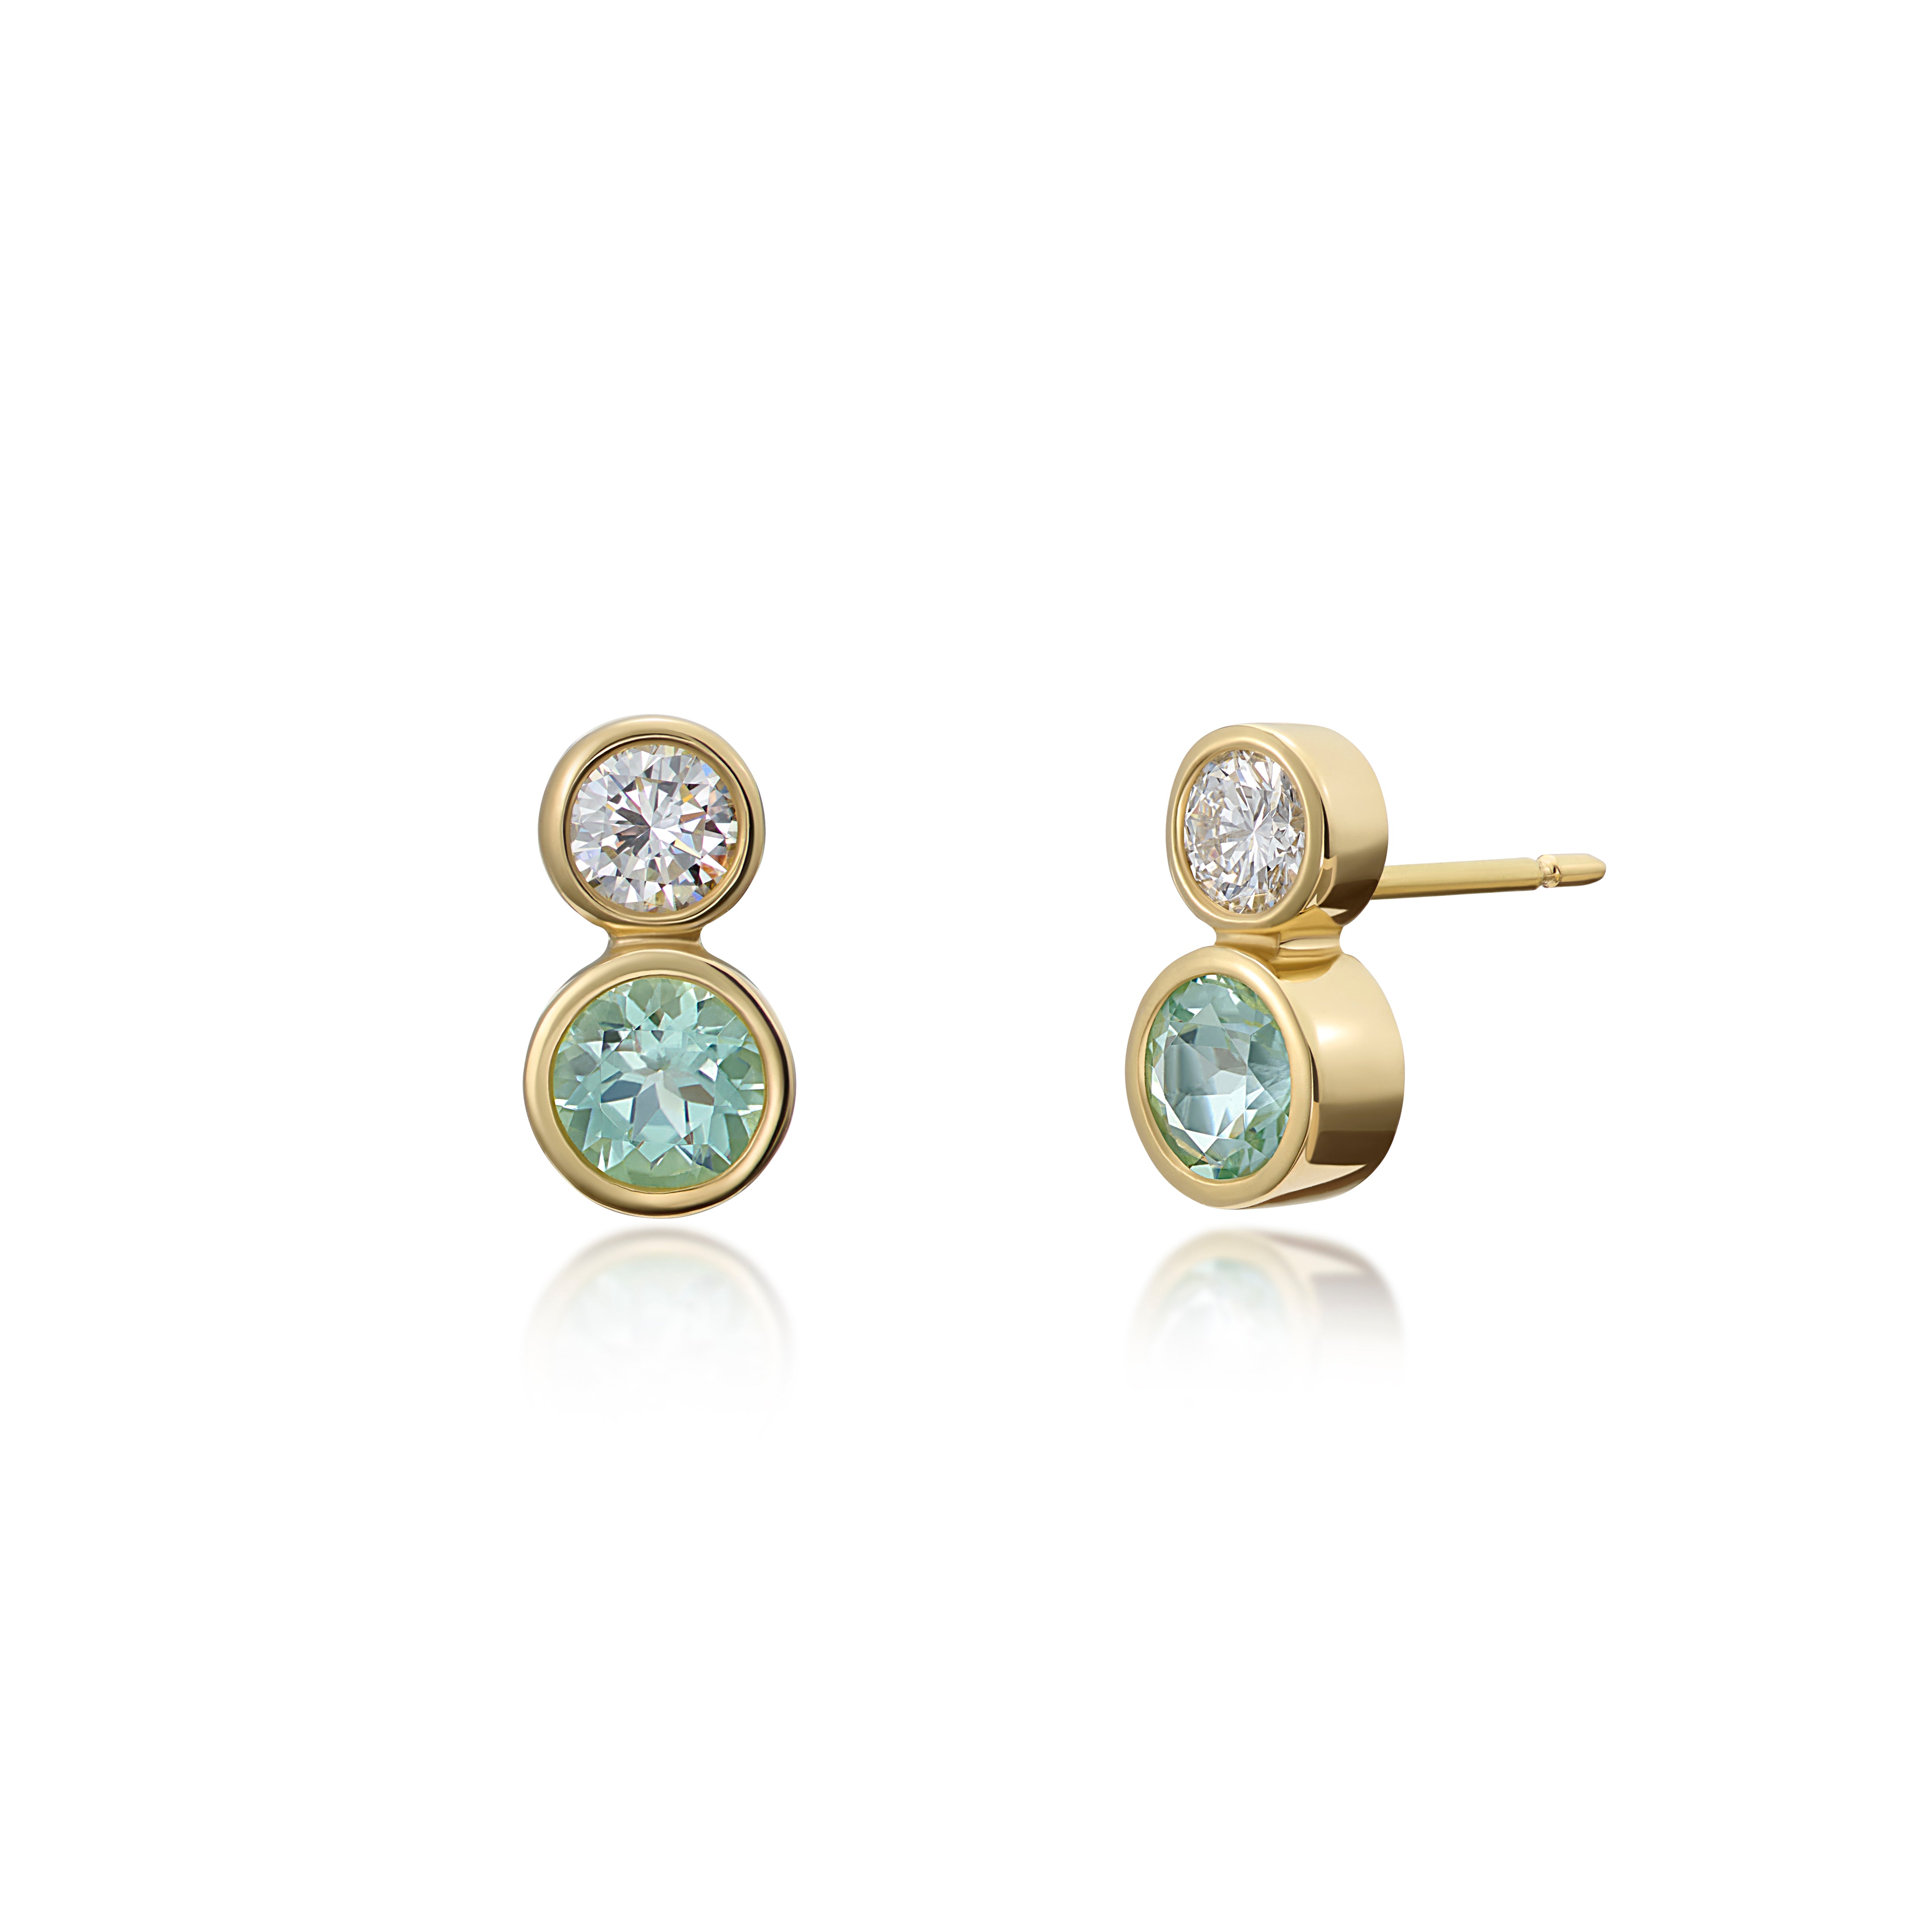 Atlantis: Diamond and Tourmaline Stud Earrings